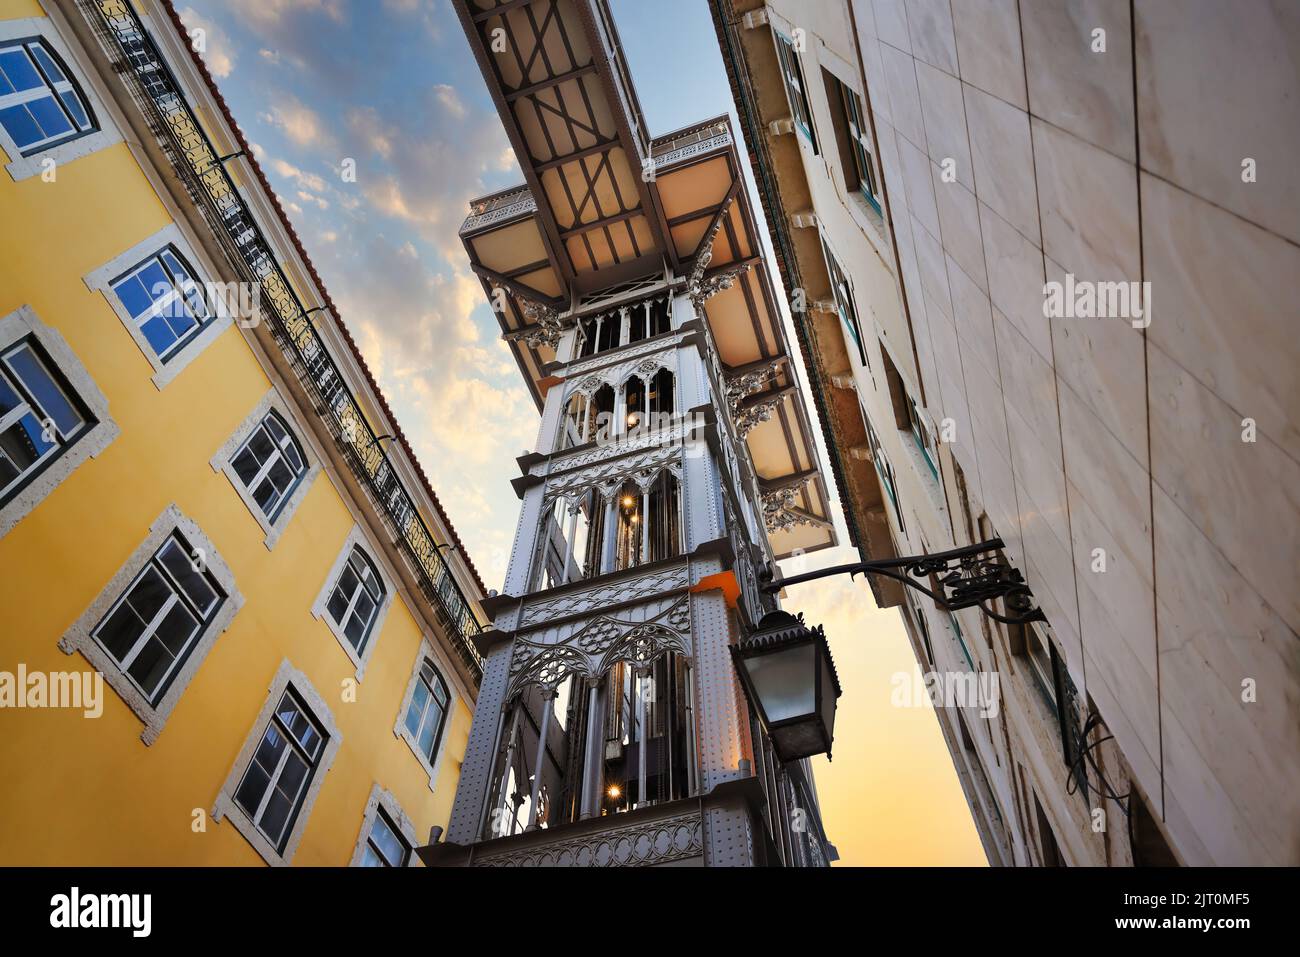 Ascensor de Santa Justa, Elevador de Santa Justa en Lisboa, Portugal. Famoso ascensor, también llamado Ascensor Carmo, que conecta Baixa con la Plaza Carmo. Foto de stock